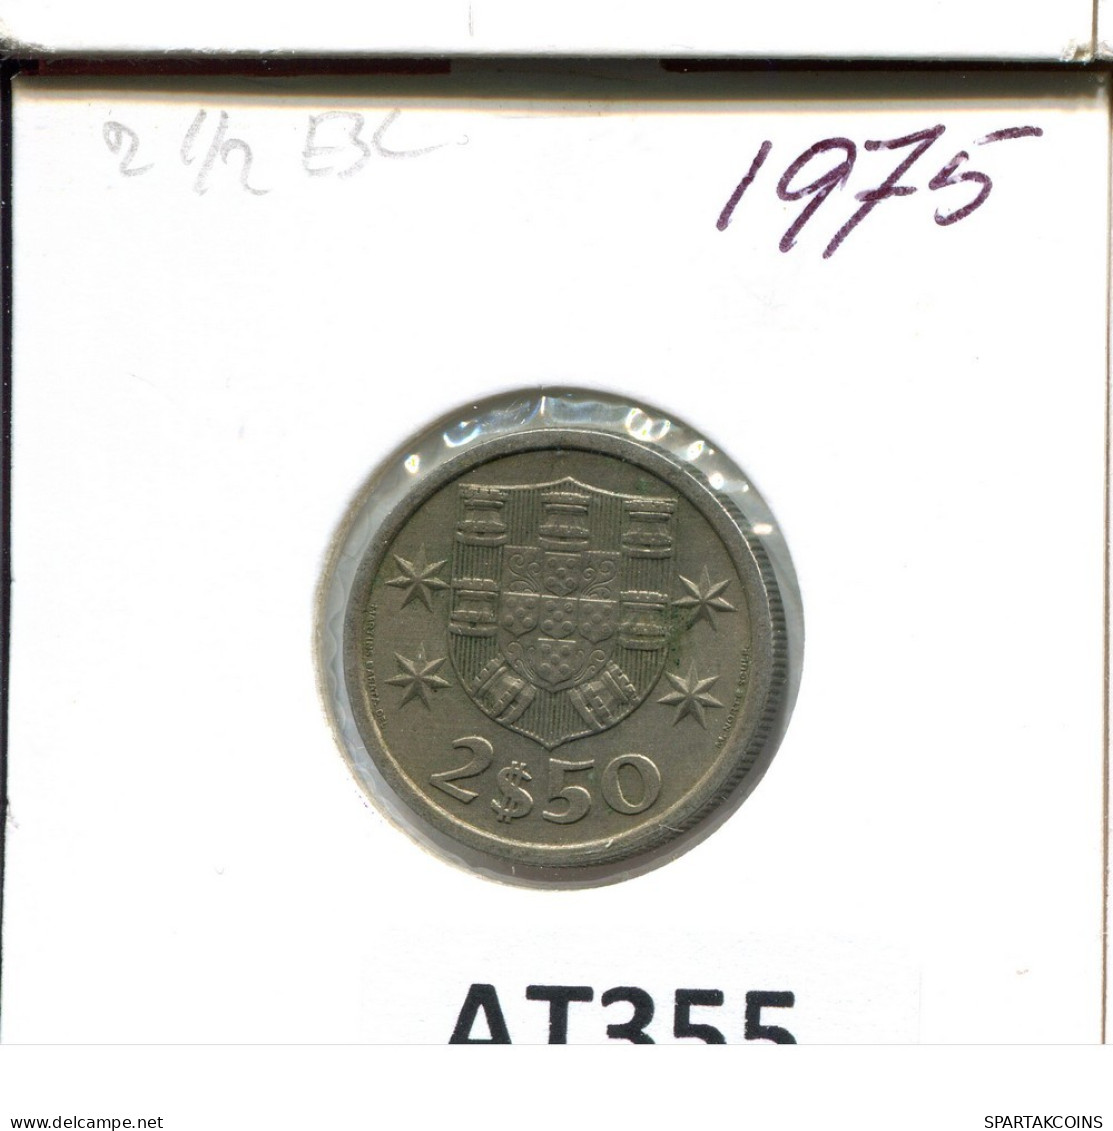 2$50 ESCUDOS 1975 PORTUGAL Münze #AT355.D.A - Portogallo